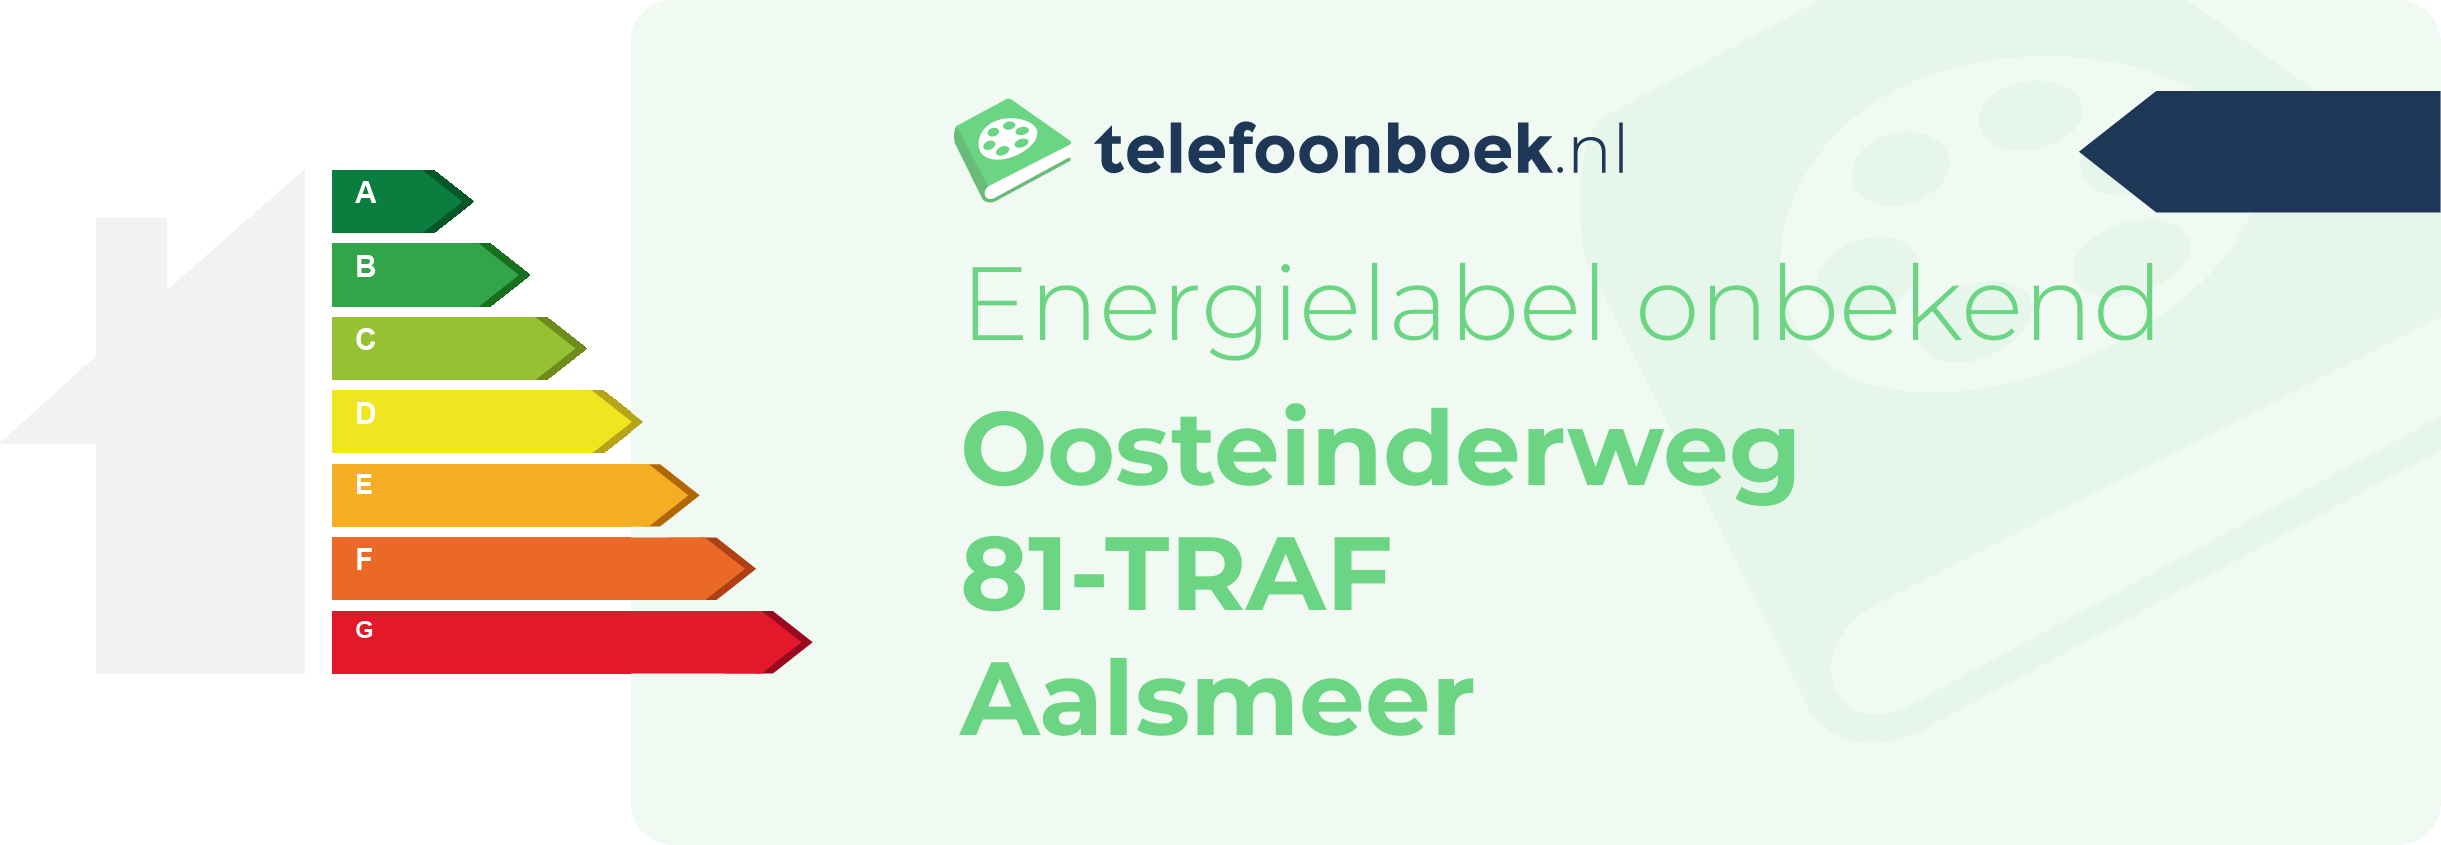 Energielabel Oosteinderweg 81-TRAF Aalsmeer